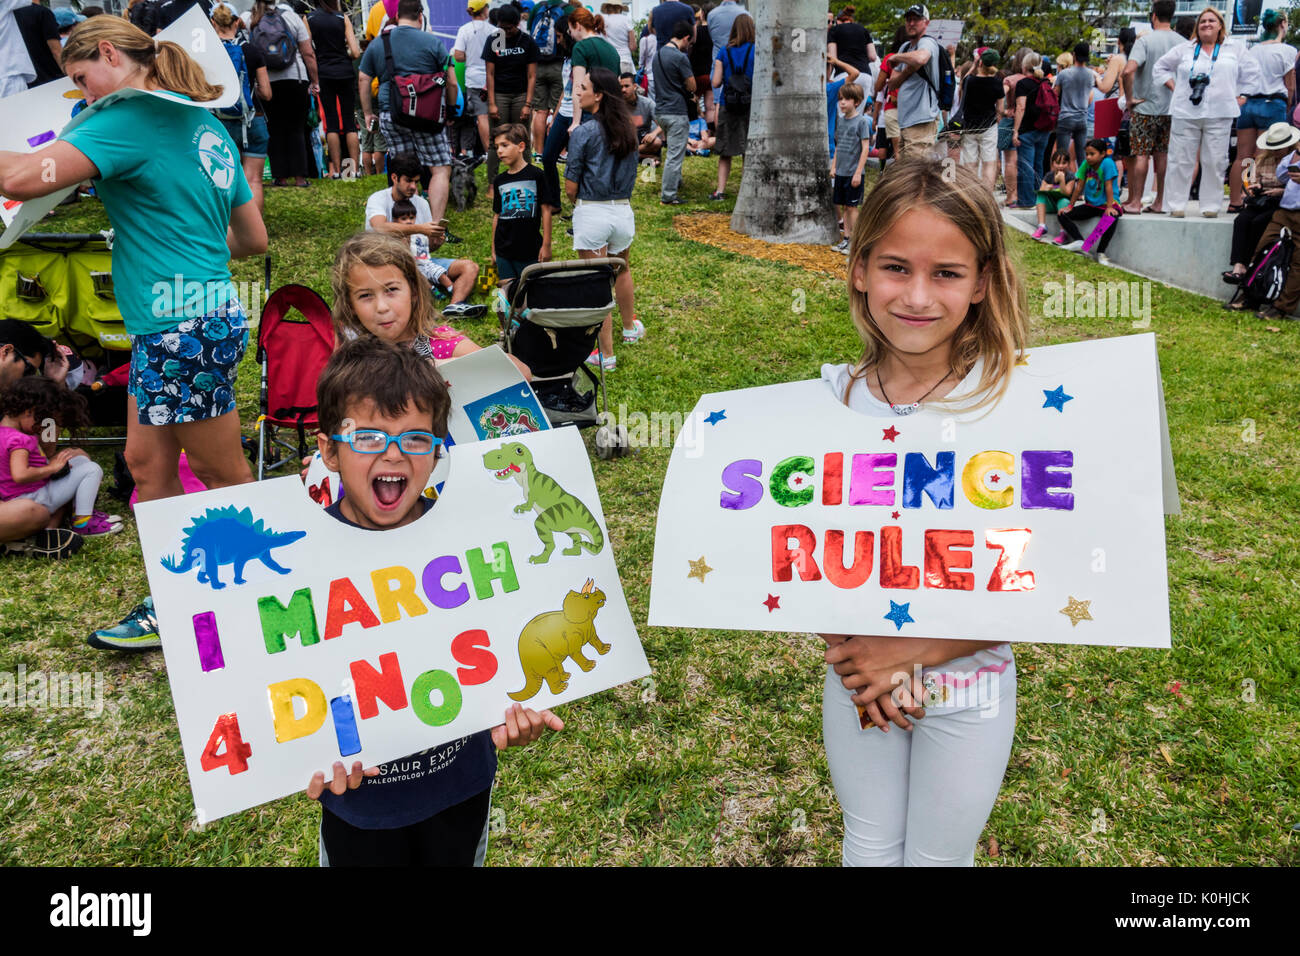 Miami Florida,Museum Park,March for Science,Protest,rallye,panneau,affiche,protester,garçon garçons,mâle enfant enfants enfant enfants jeune,fille filles,femelle Stud Banque D'Images